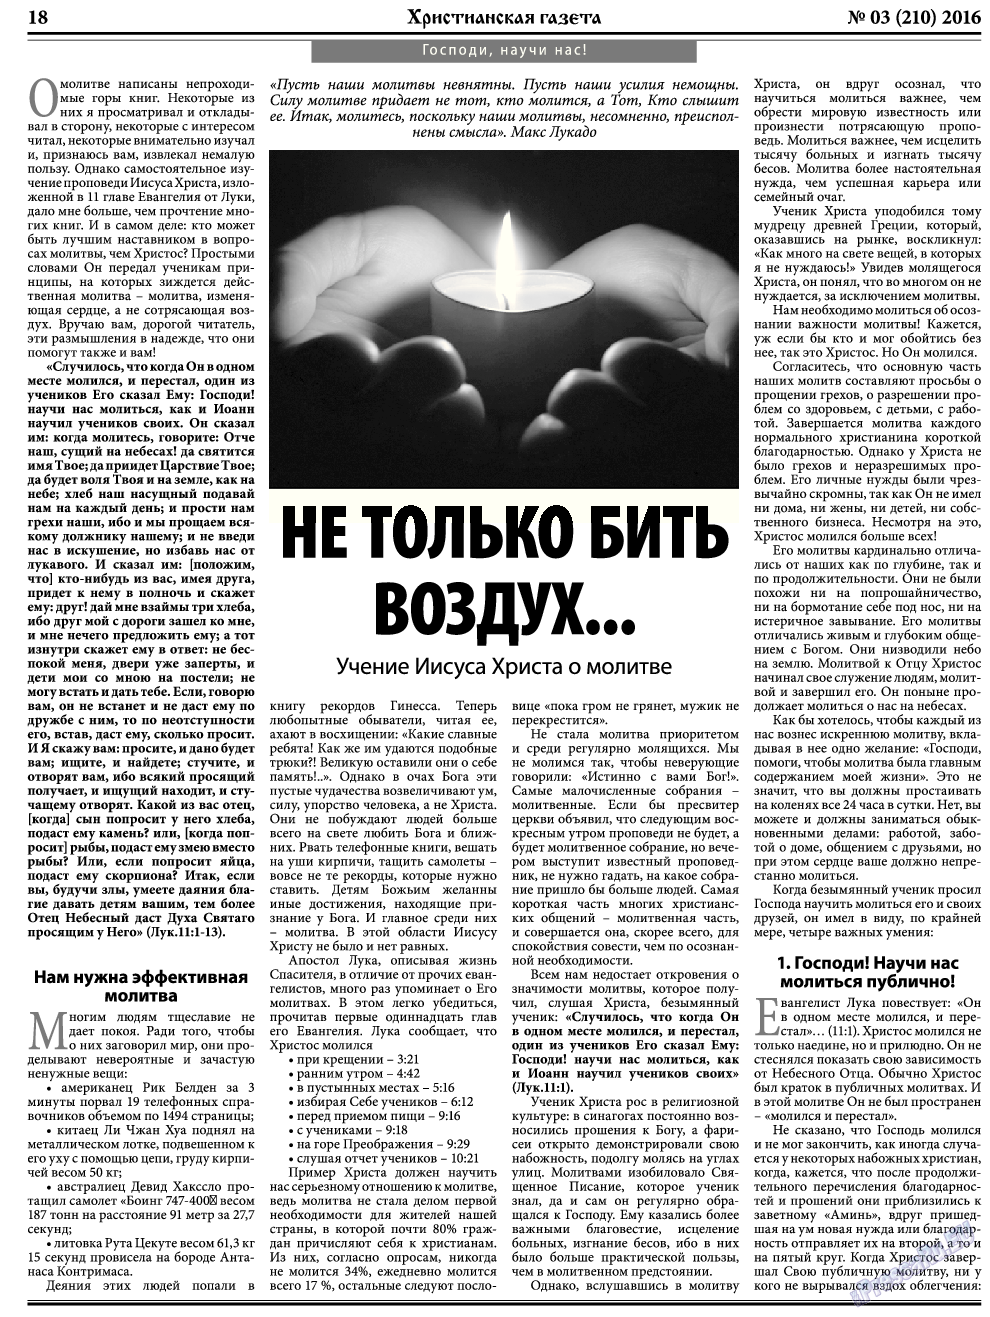 Христианская газета, газета. 2016 №3 стр.26